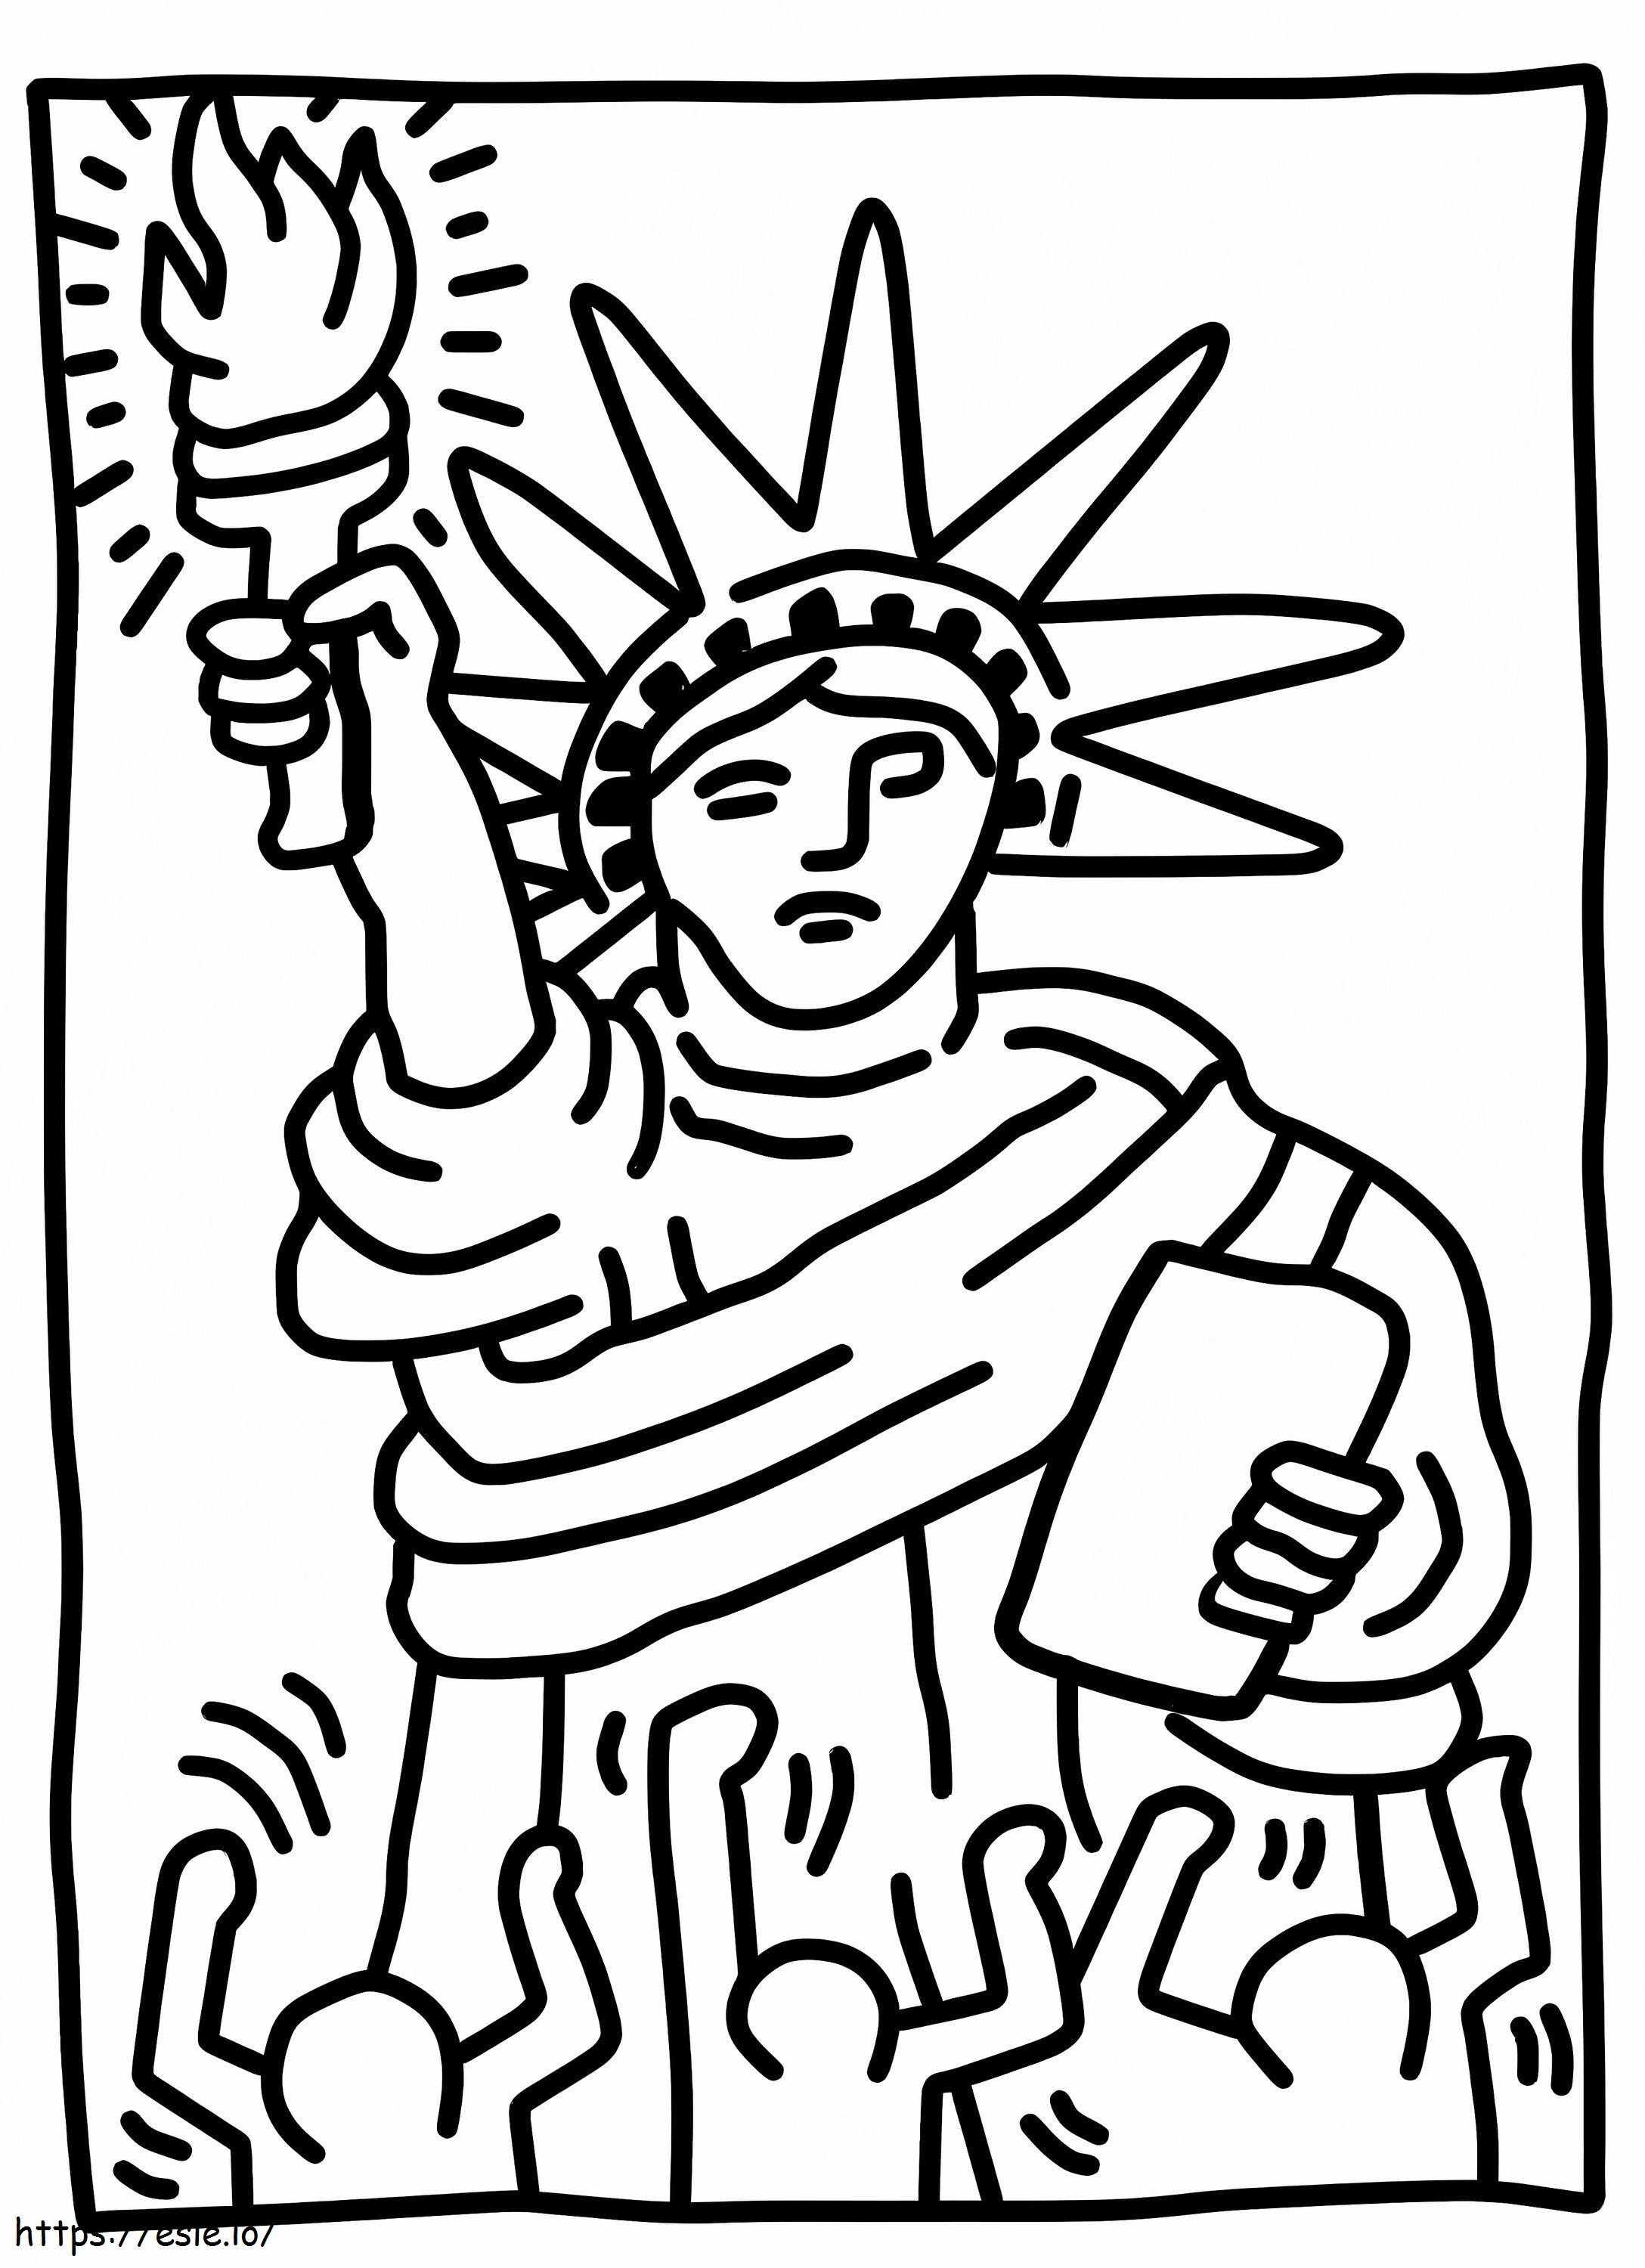 Disegno della Statua della Libertà da colorare